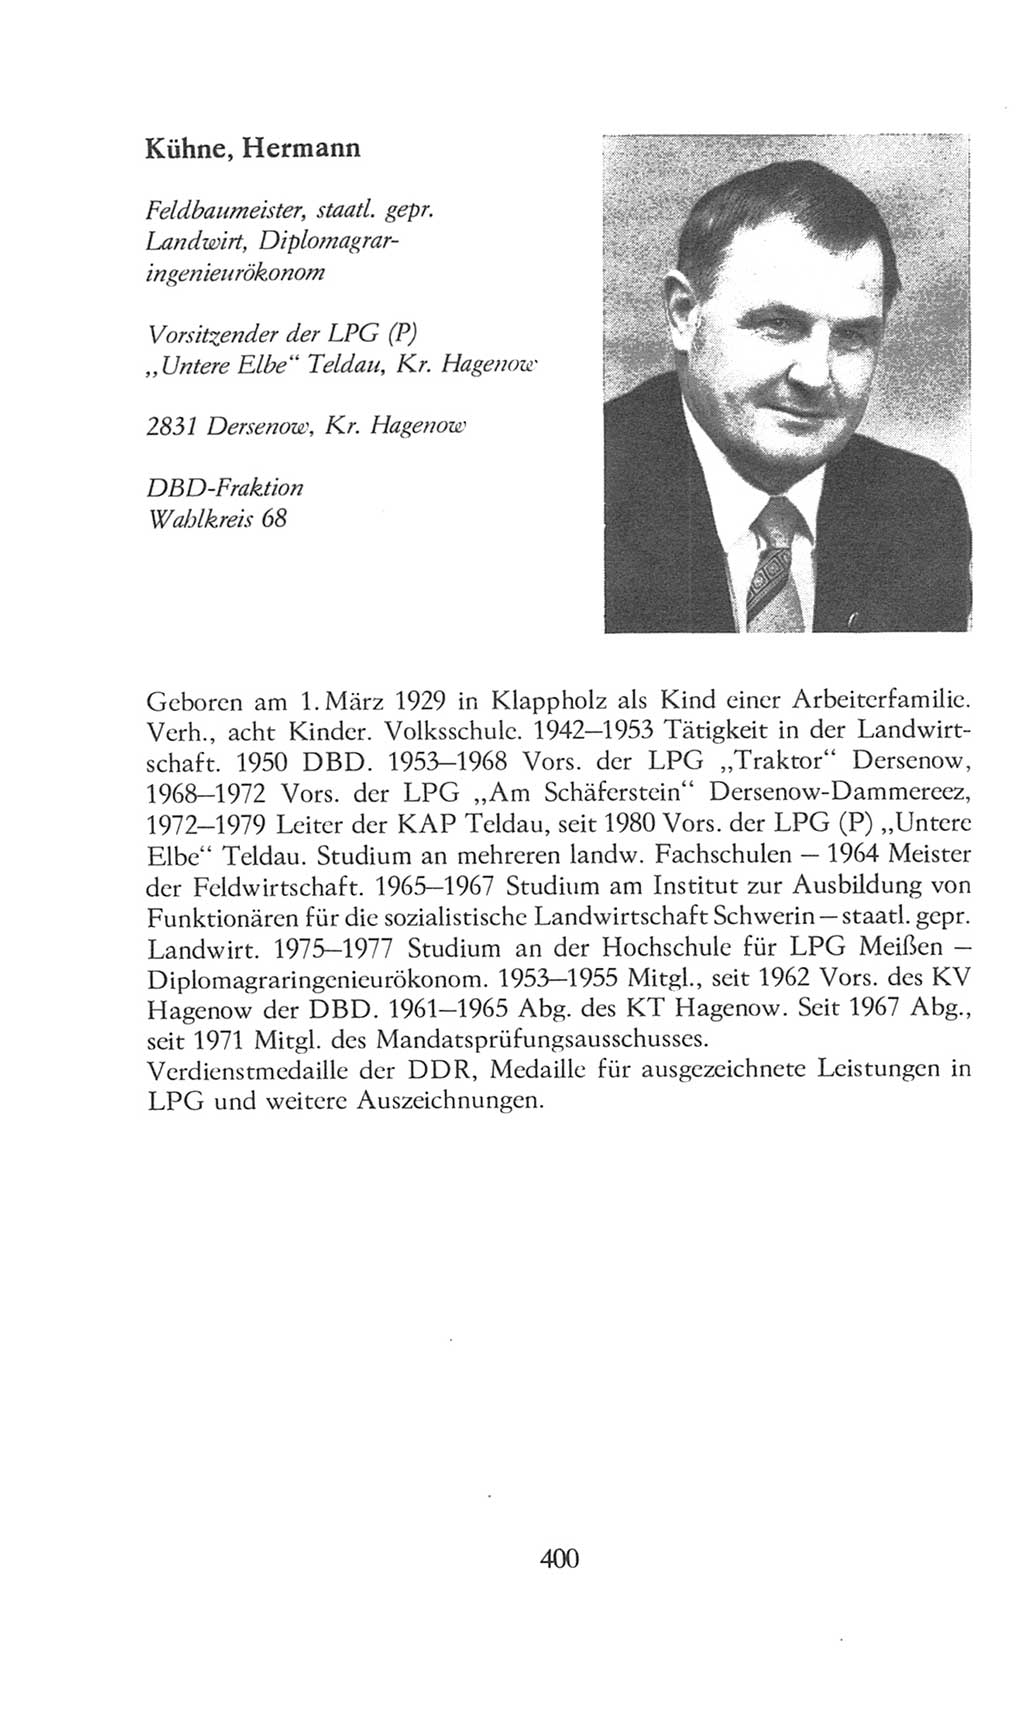 Volkskammer (VK) der Deutschen Demokratischen Republik (DDR), 8. Wahlperiode 1981-1986, Seite 400 (VK. DDR 8. WP. 1981-1986, S. 400)